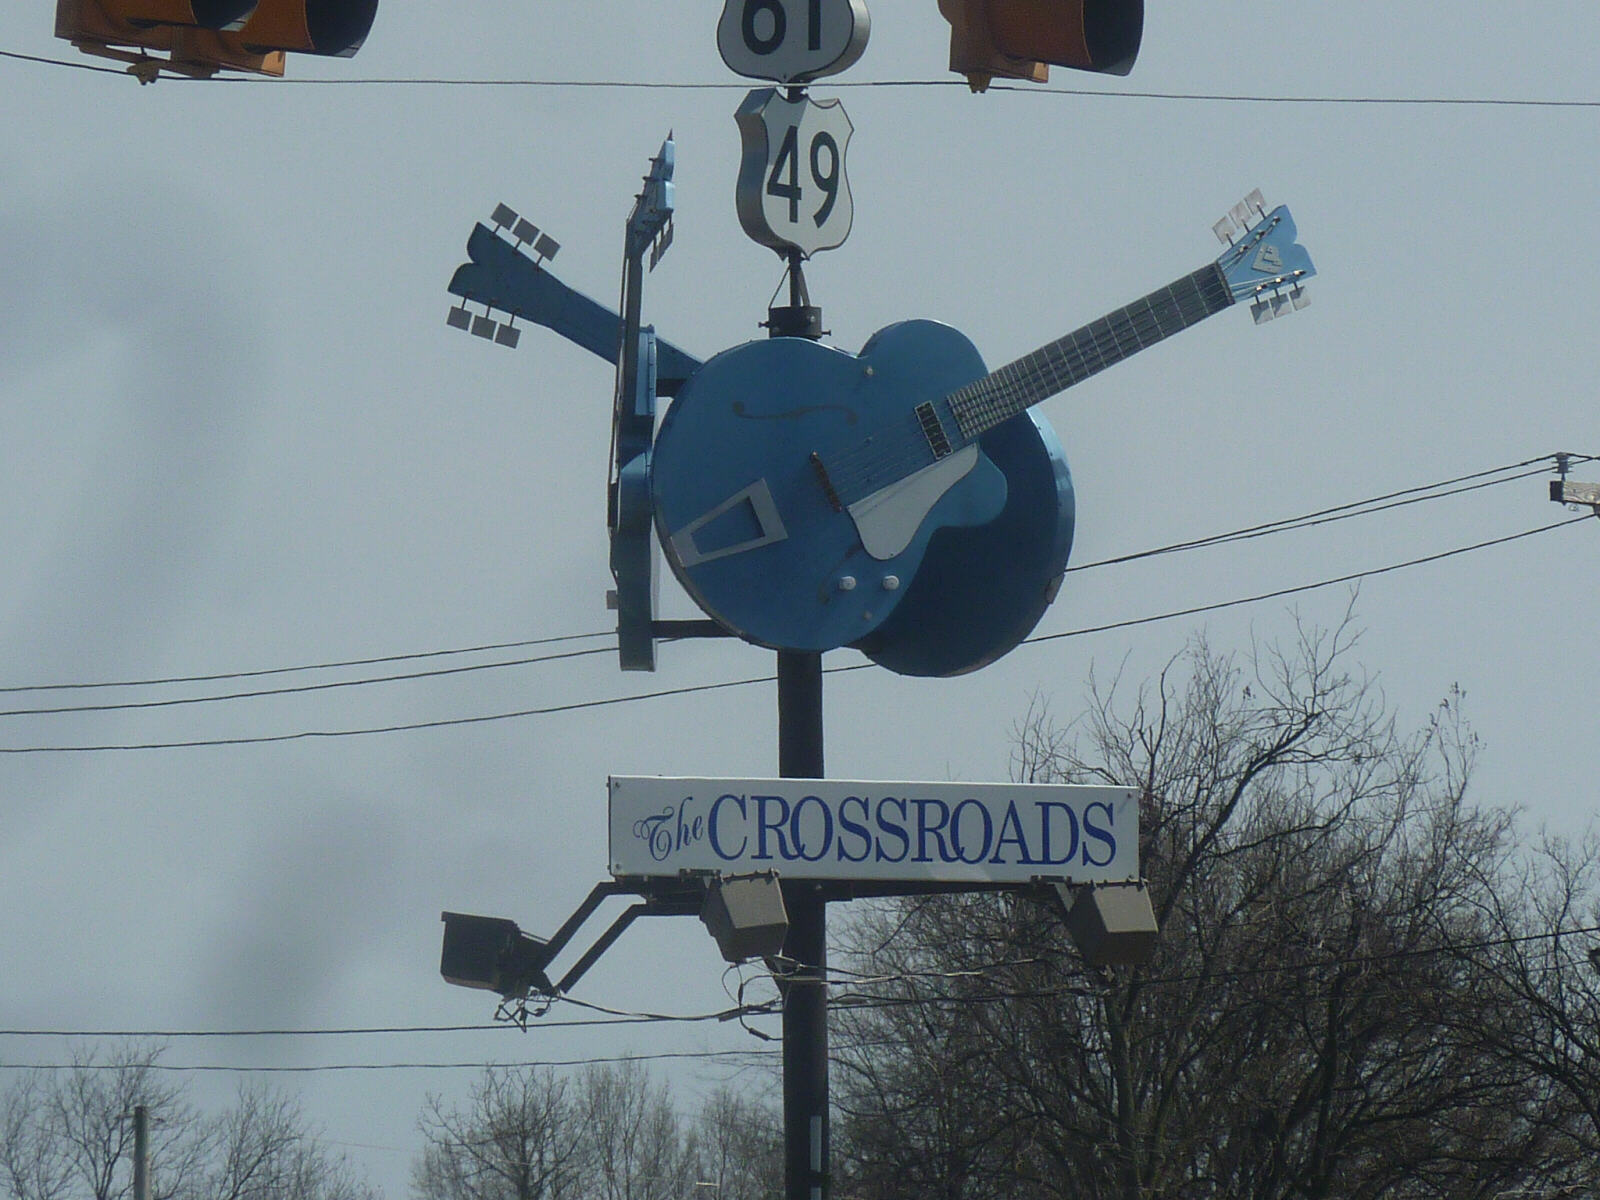 The Devil's Crossroads, Clarksdale, Mississippi